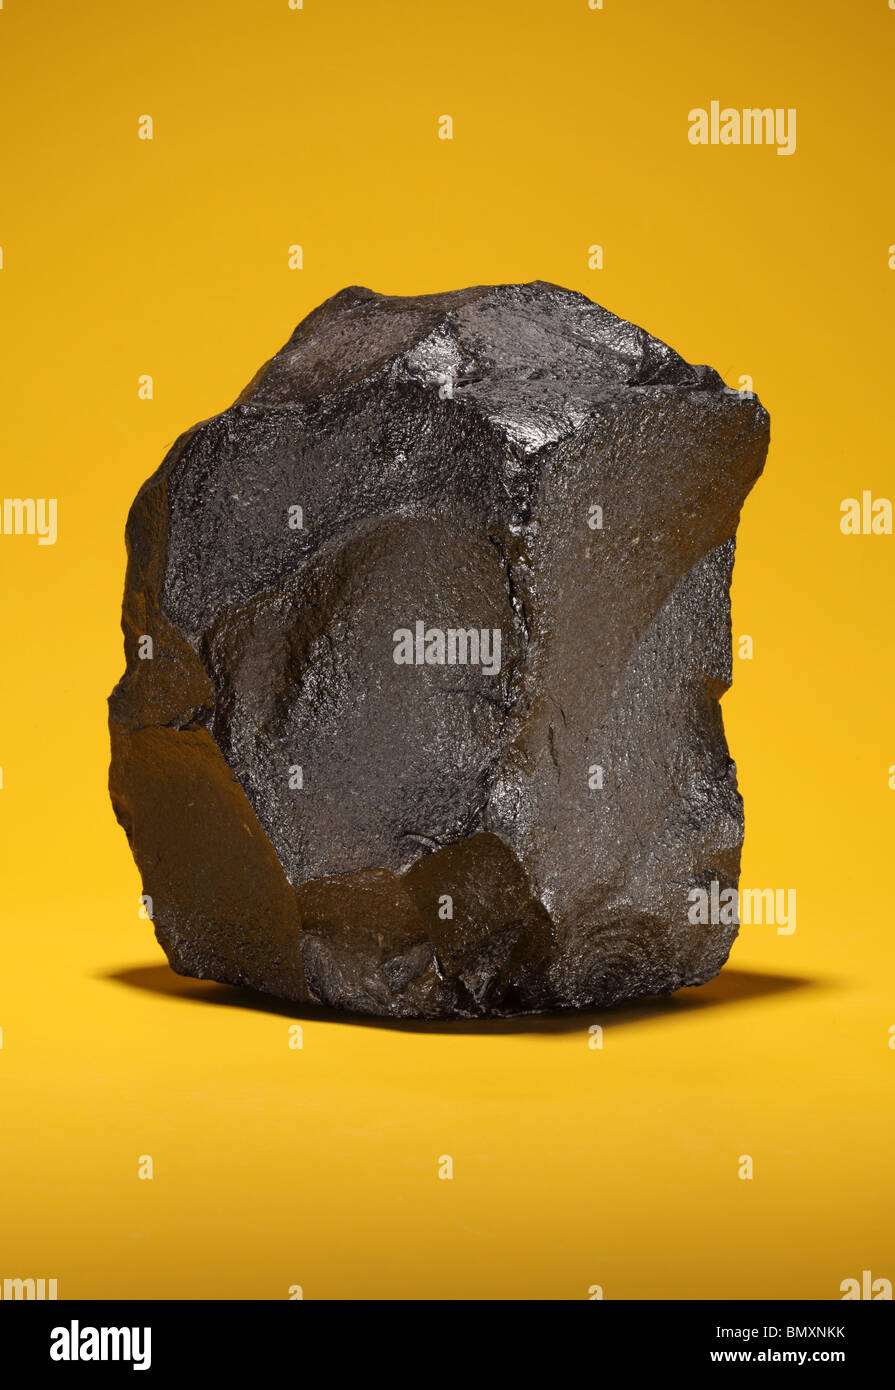 Un grand morceau de charbon bitumineux noir sur un fond jaune lumineux Banque D'Images